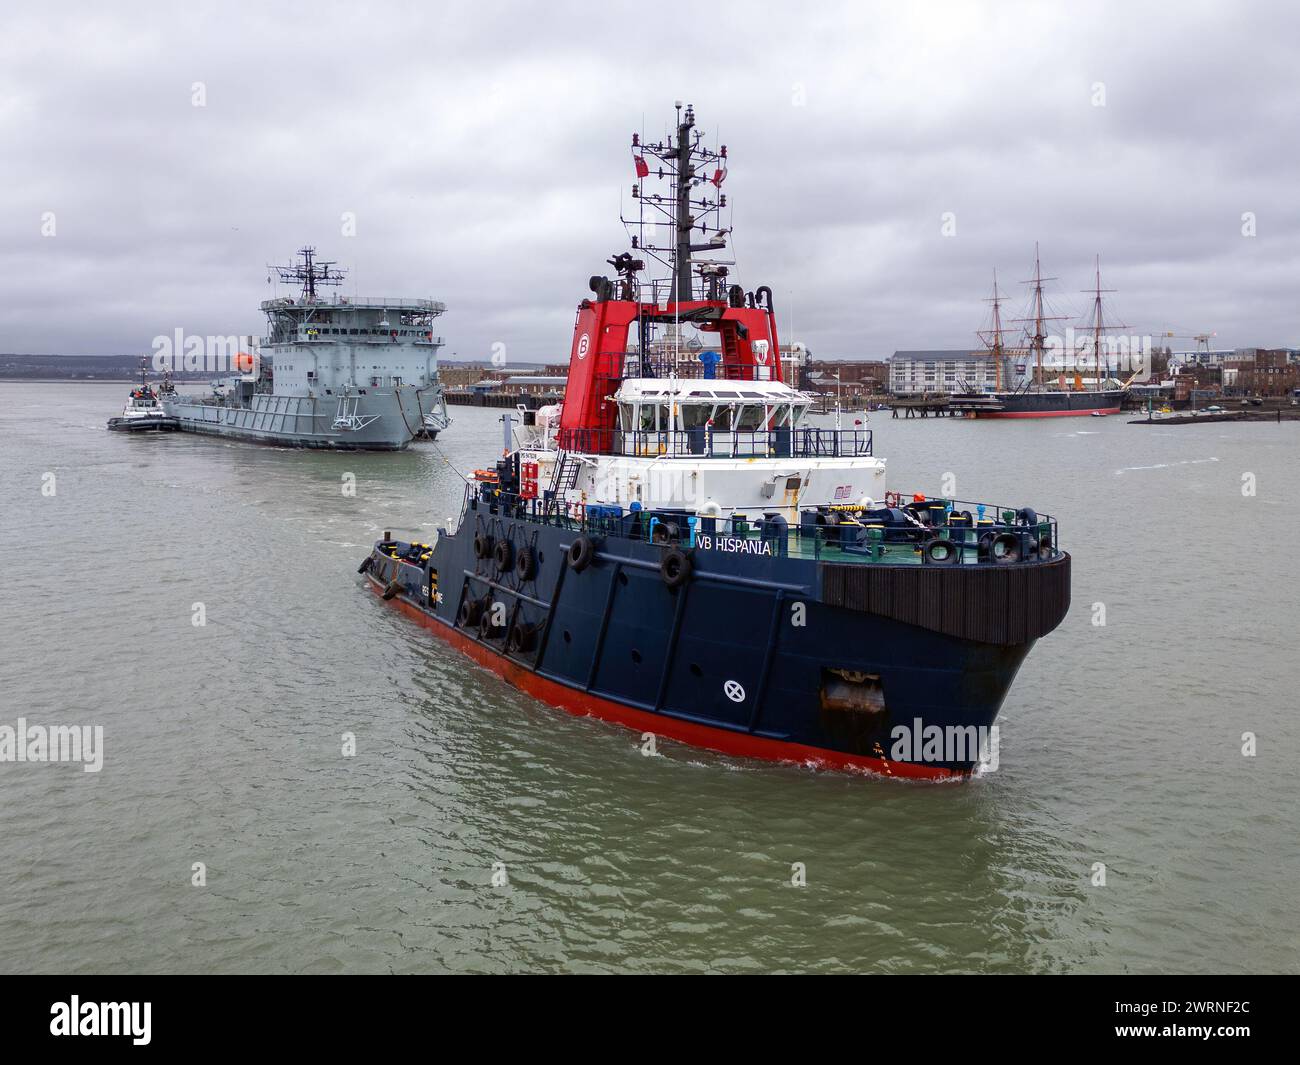 Il rimorchiatore Boluda VB Hispania che traina l'ex diligenza RFA dal porto di Portsmouth per essere messo a disposizione in un deposito rottami turco. Foto Stock